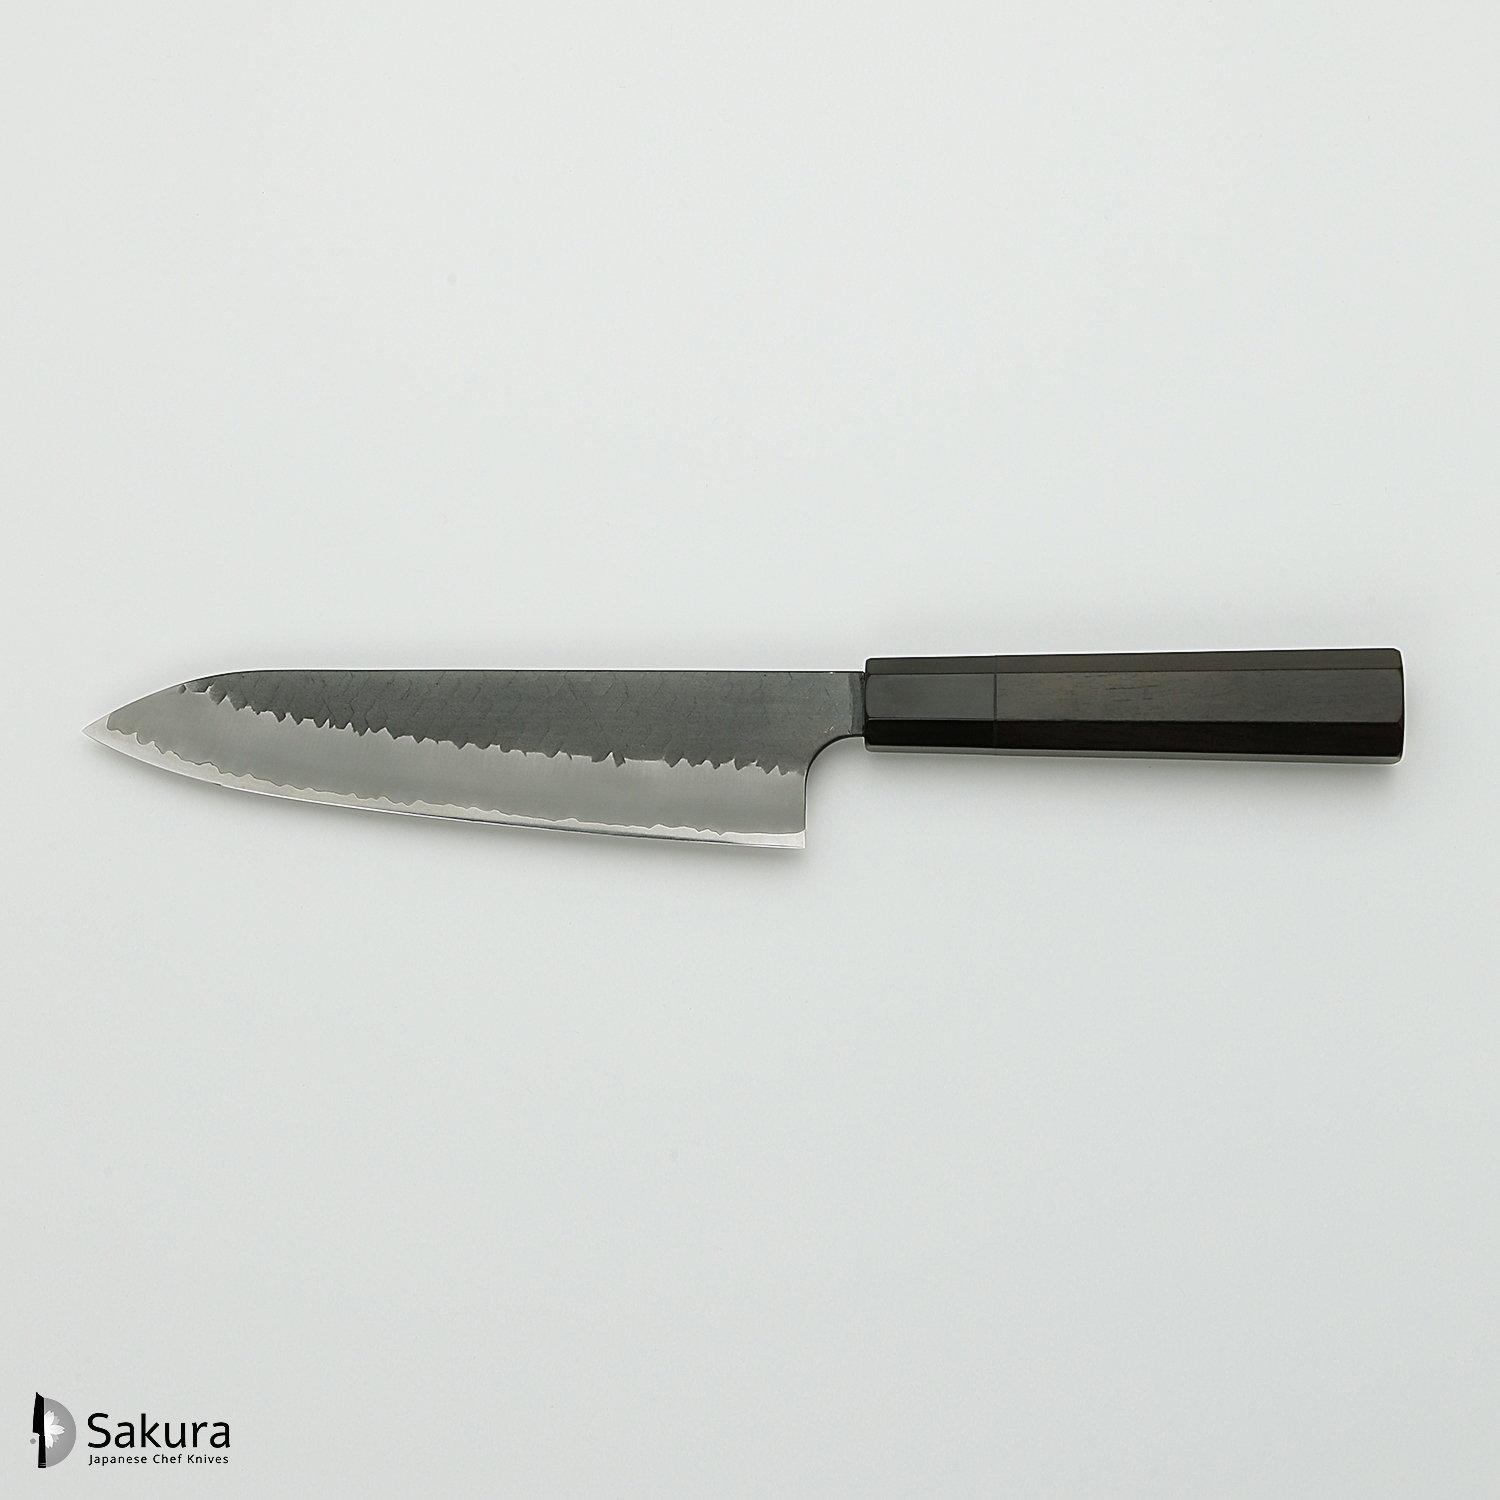 סכין שף רב-תכליתית גִּיוּטוֹ 210מ״מ מחושלת בעבודת יד 3 שכבות: פלדת פחמן יפנית מתקדמת מסוג R2/SG2 עטופה פלדת אל-חלד גימור קורואיצ׳י שחור עם ריקוע פטיש ניגארה יפן